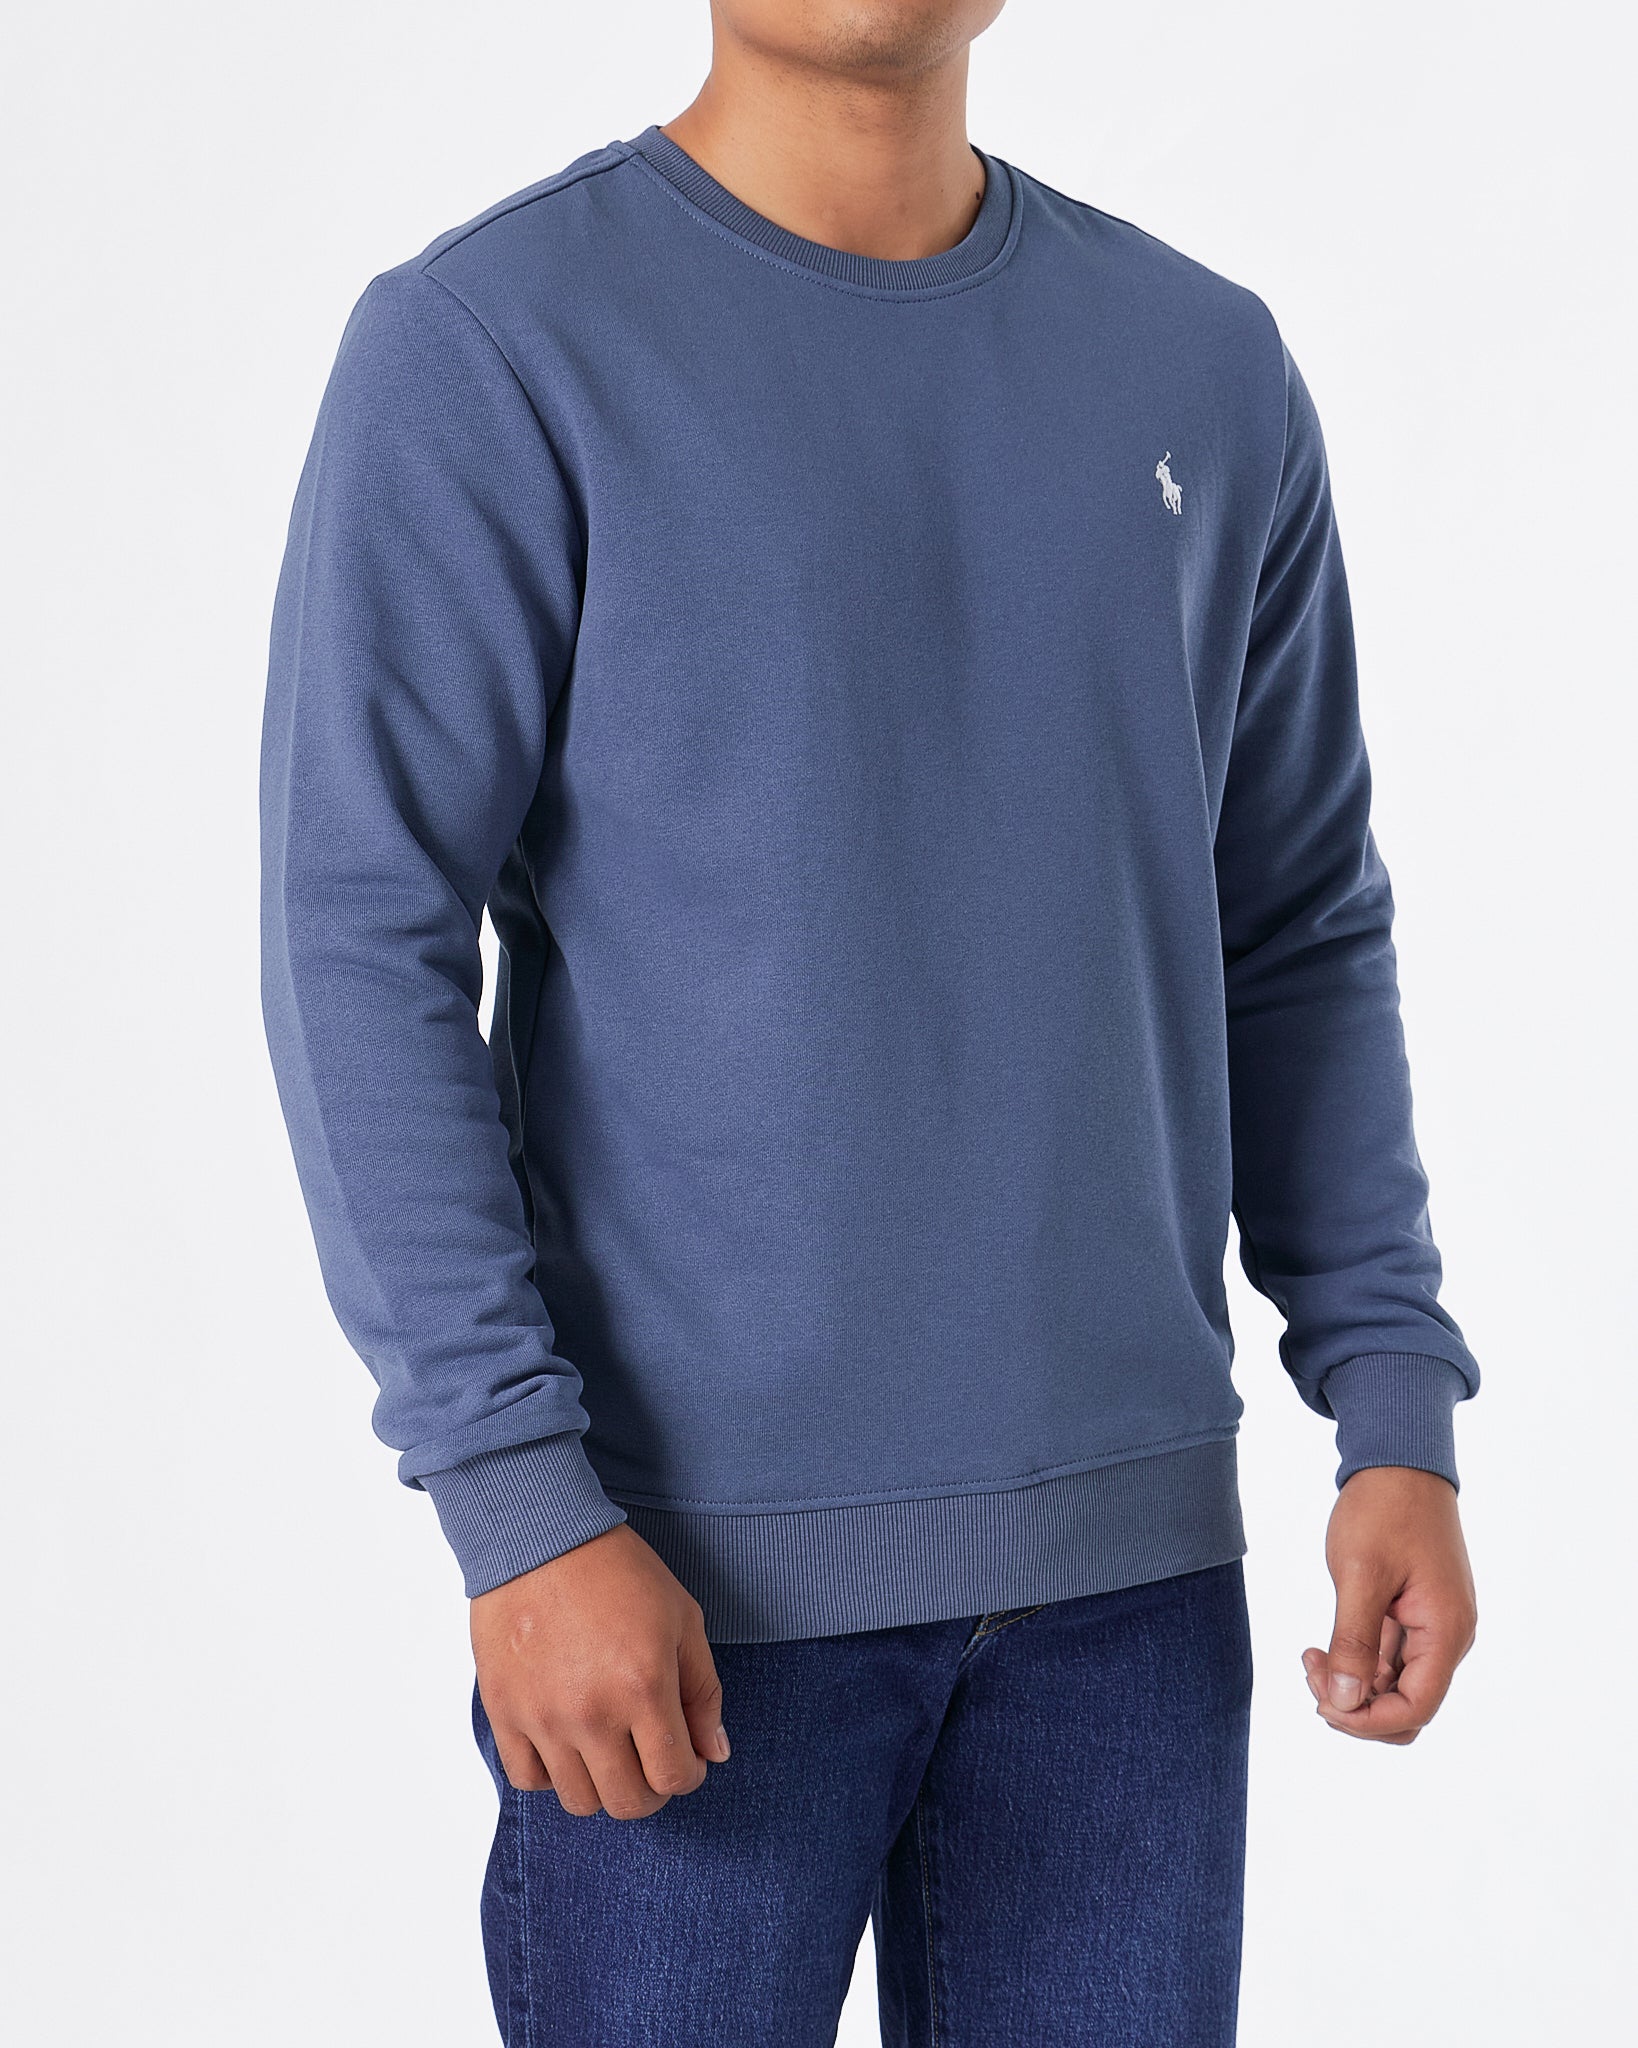 RL Plain Color Men Blue Sweater 29.90